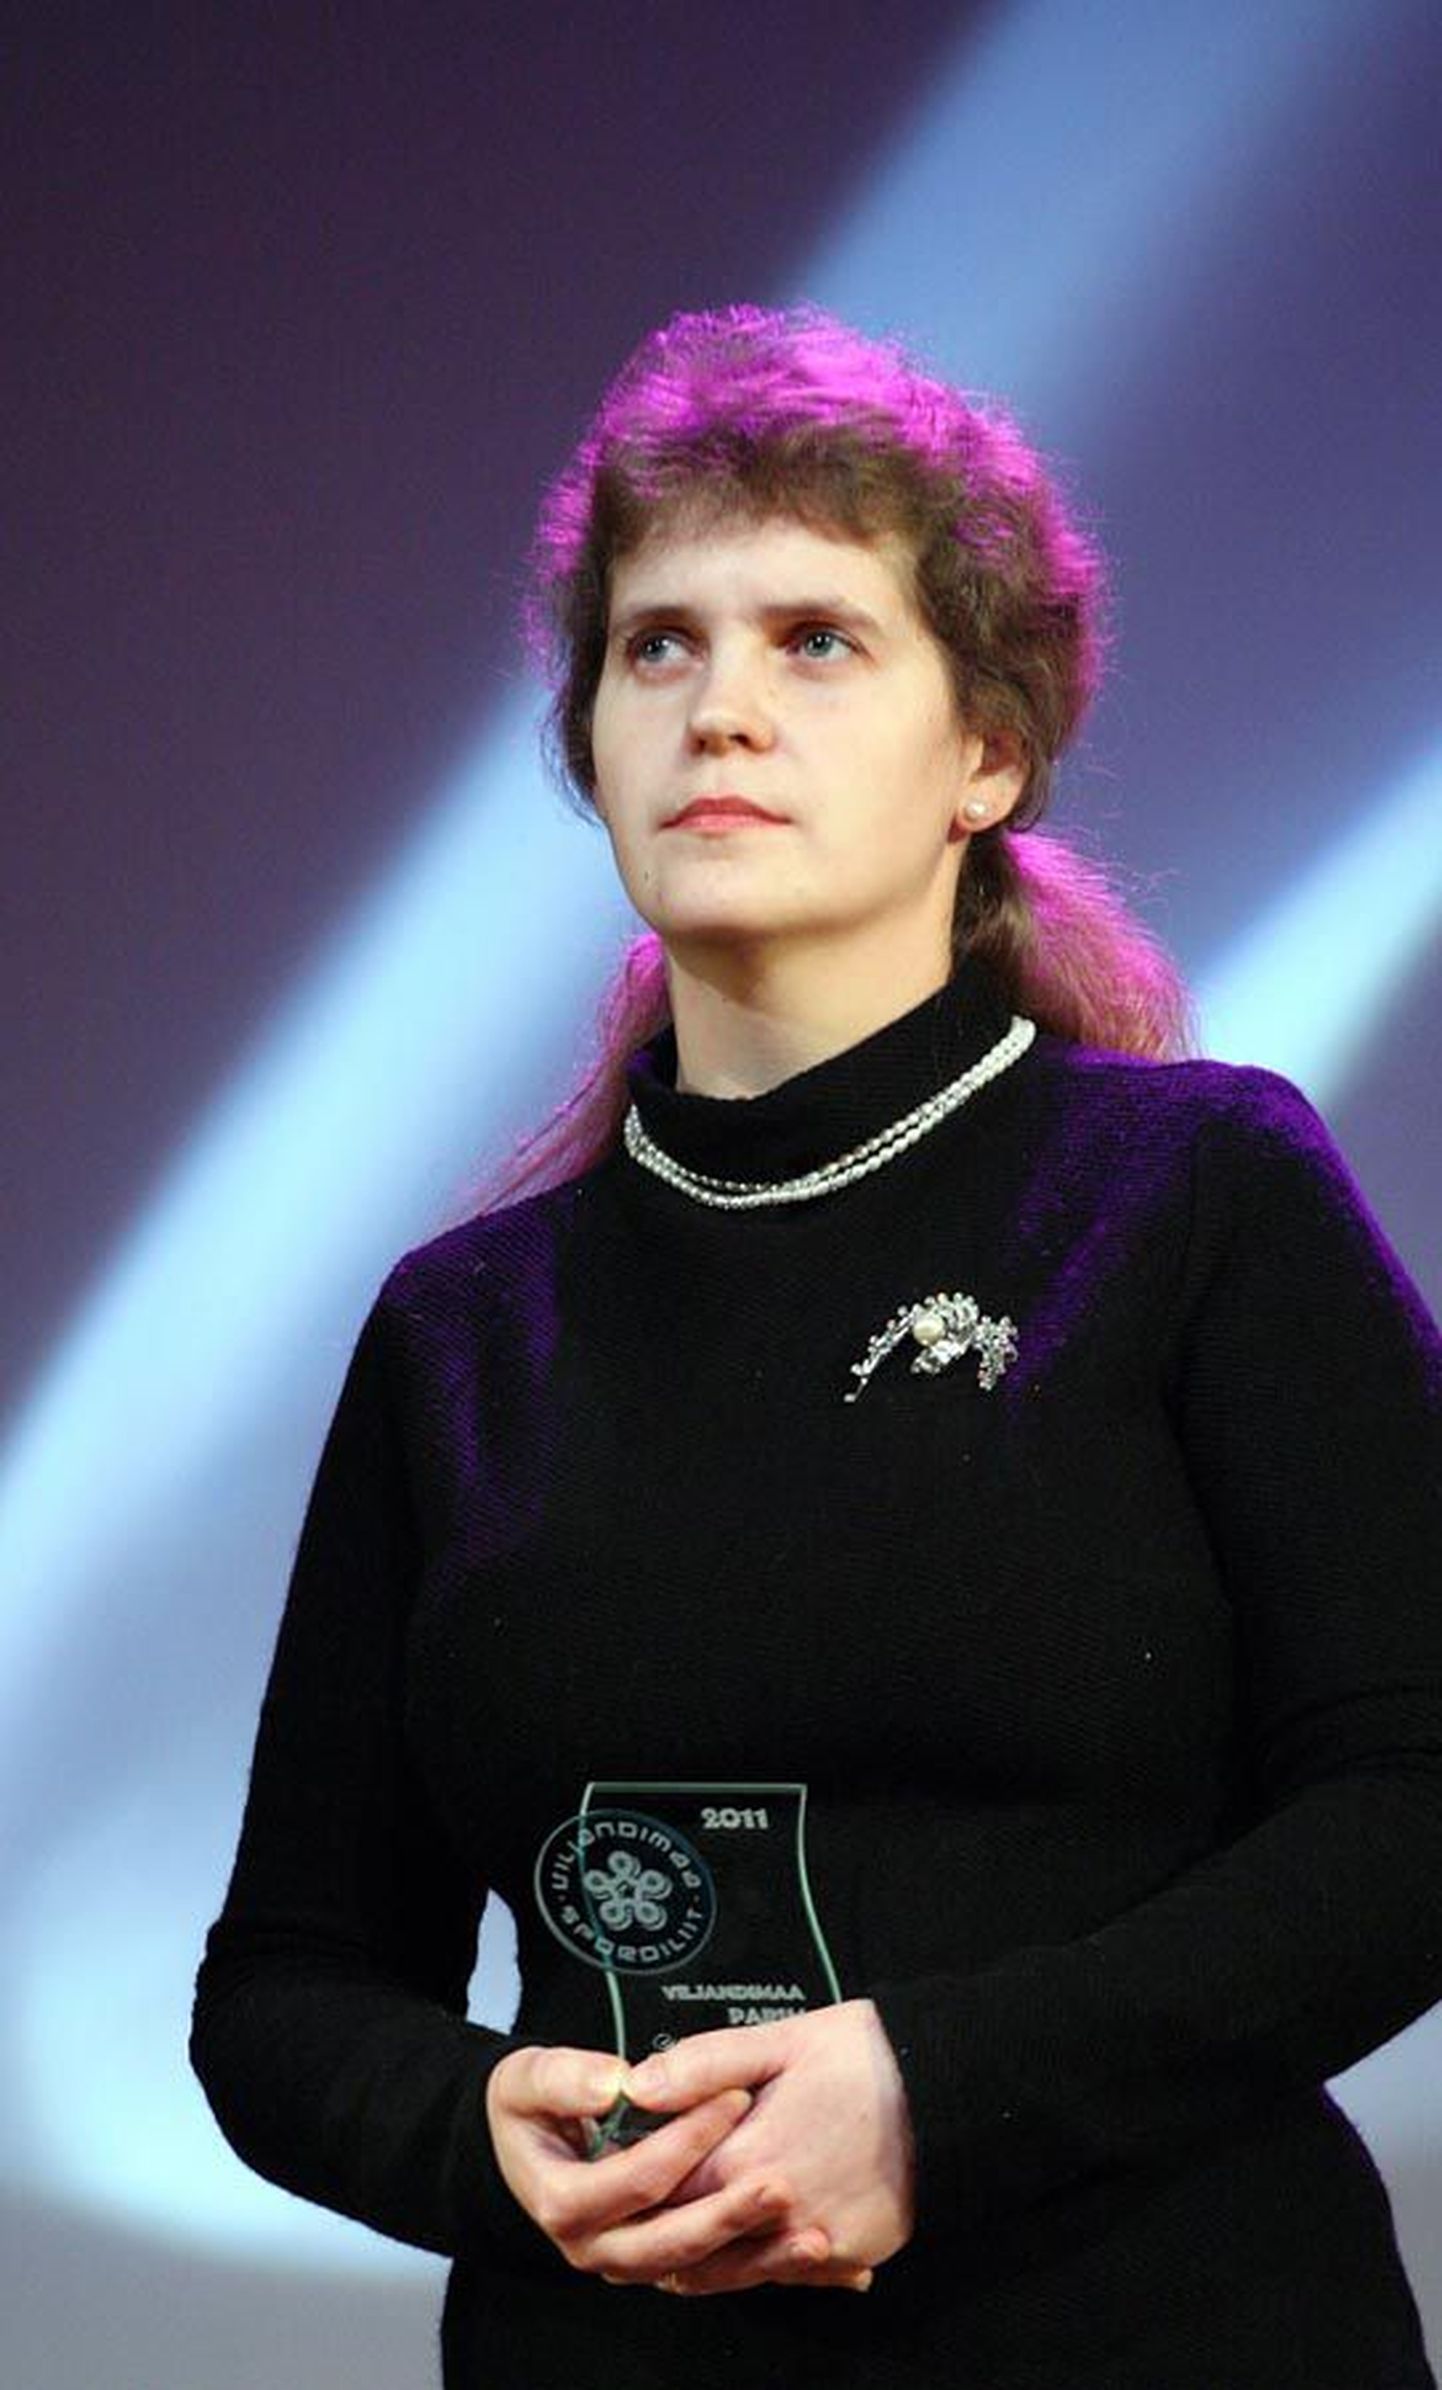 Eelmise aasta saavutuste põhjal Viljandimaa parimaks laskesportlaseks pärjatud Kairi Heinsoo pälvis Eesti naiste õhkpüstoli laskmise meistrivõistlustel kuldmedali.